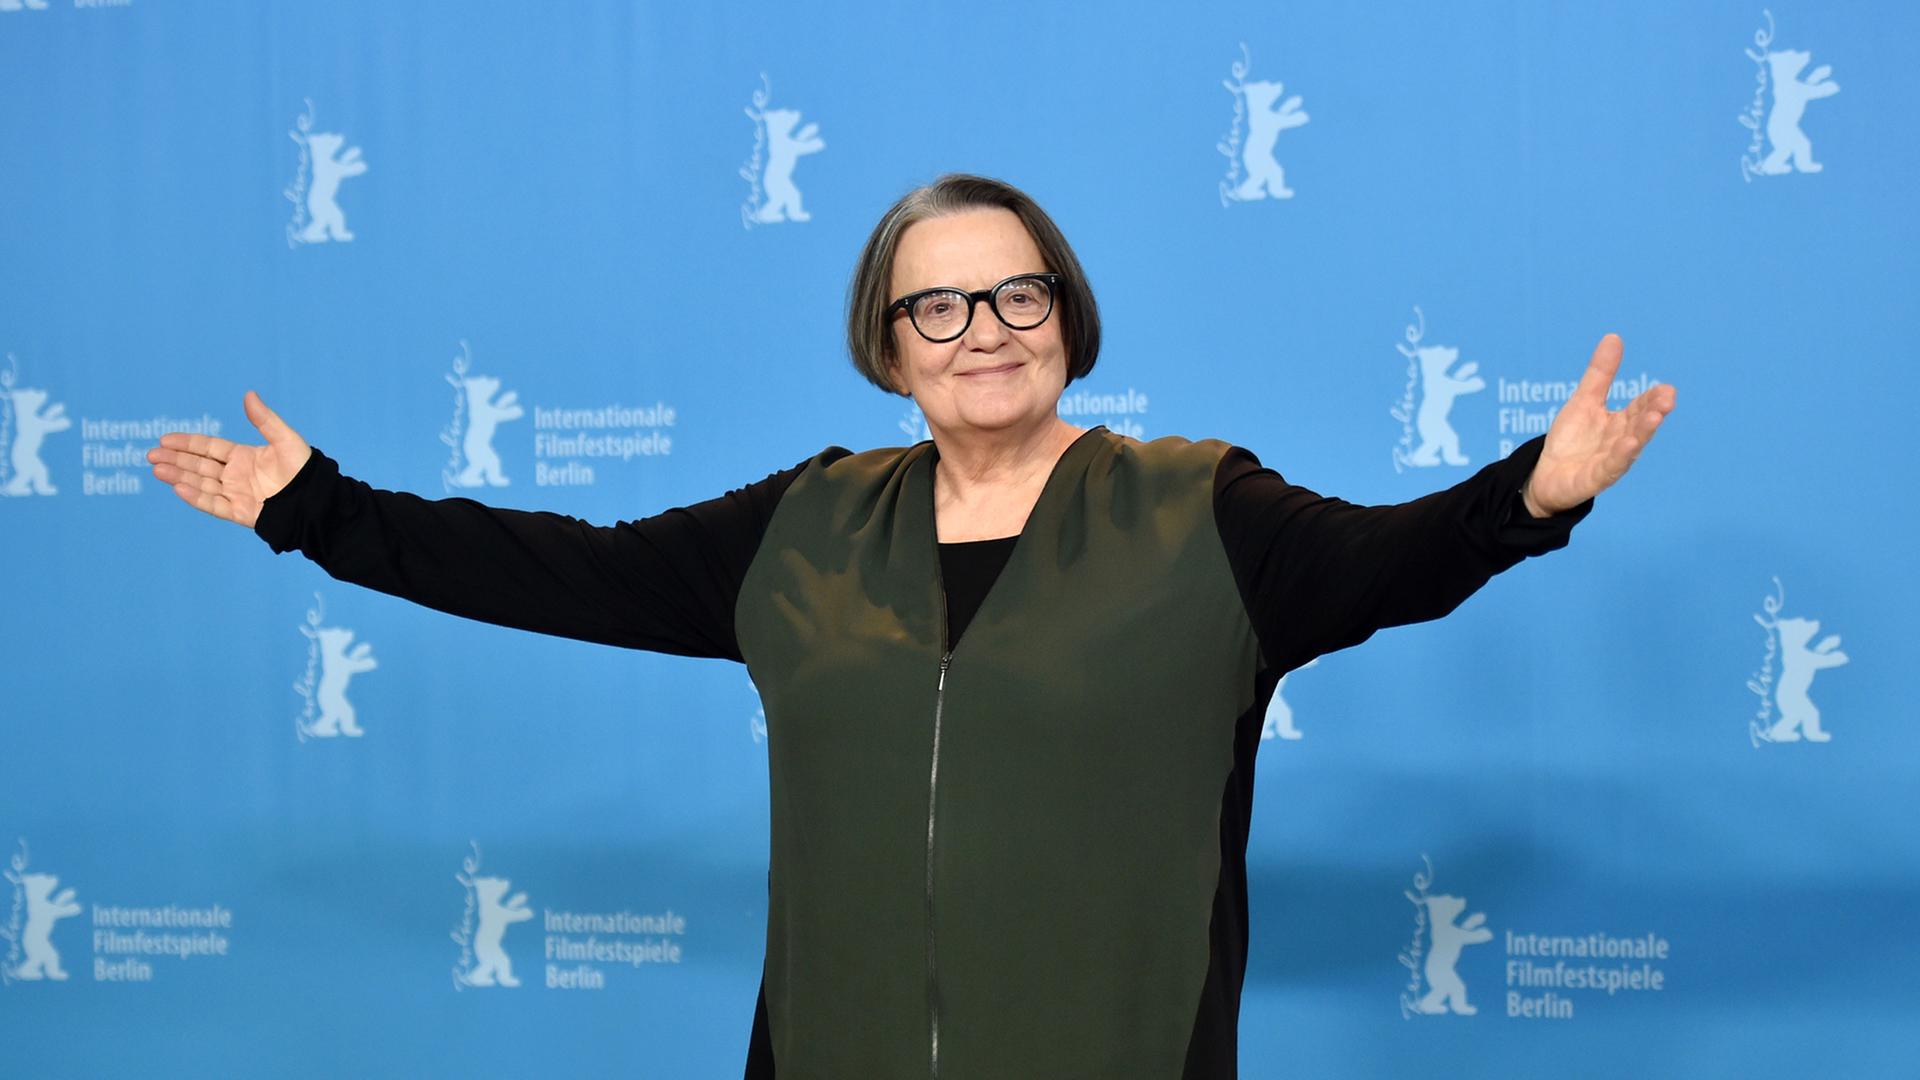 Die polnische Regisseurin Agnieszka Holland mit einladend ausgebreiteten Armen vor der Berlinale-Wand